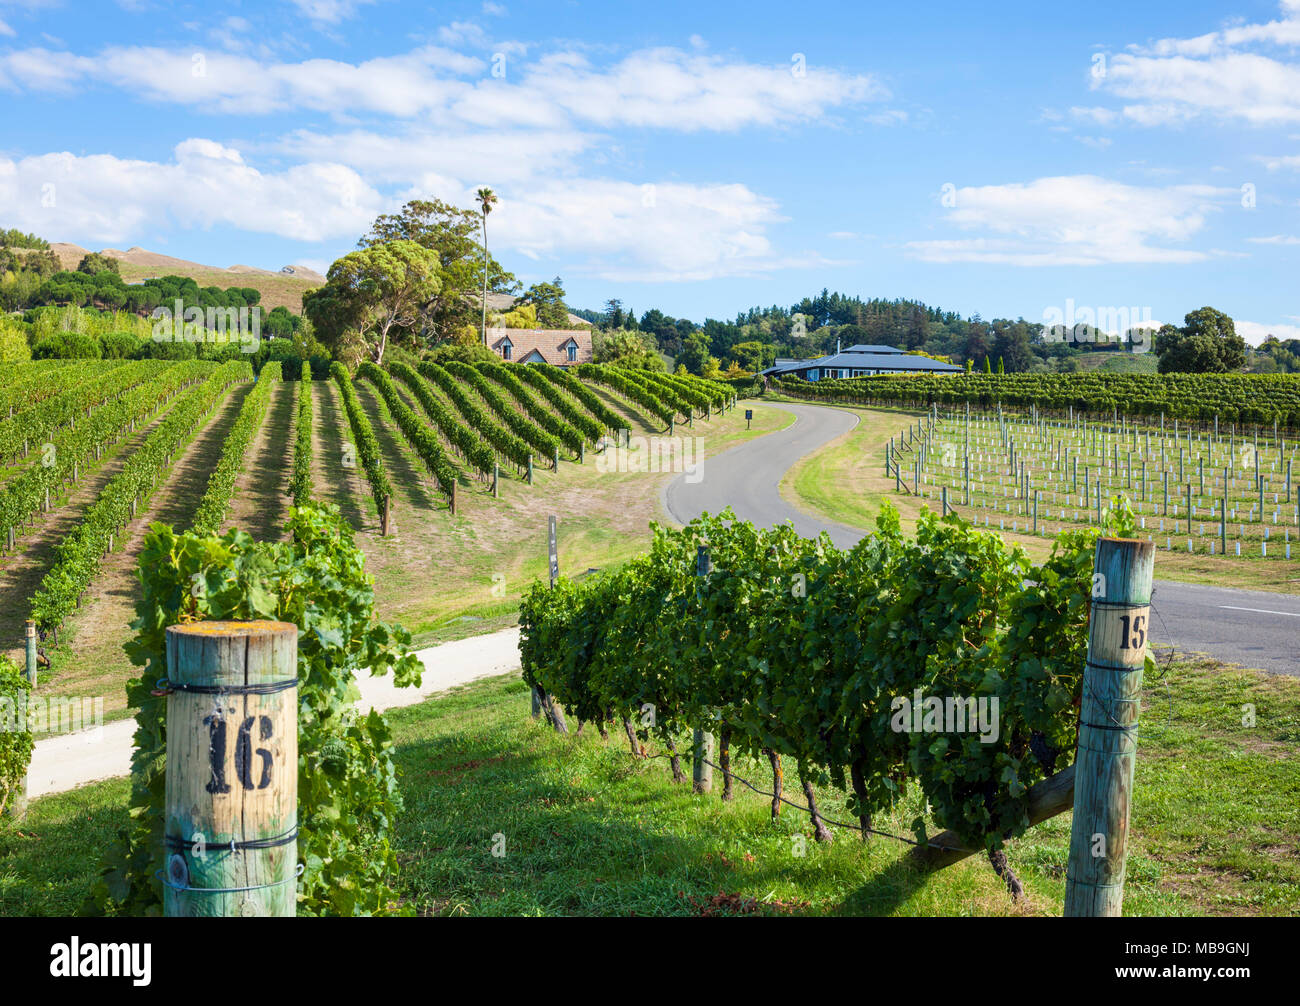 Hawkes Bay in Neuseeland Neuseeland Trauben auf Reben in Zeilen in einem Weinberg in der Hawkes Bay Napier Neuseeland Nordinsel NZ Stockfoto